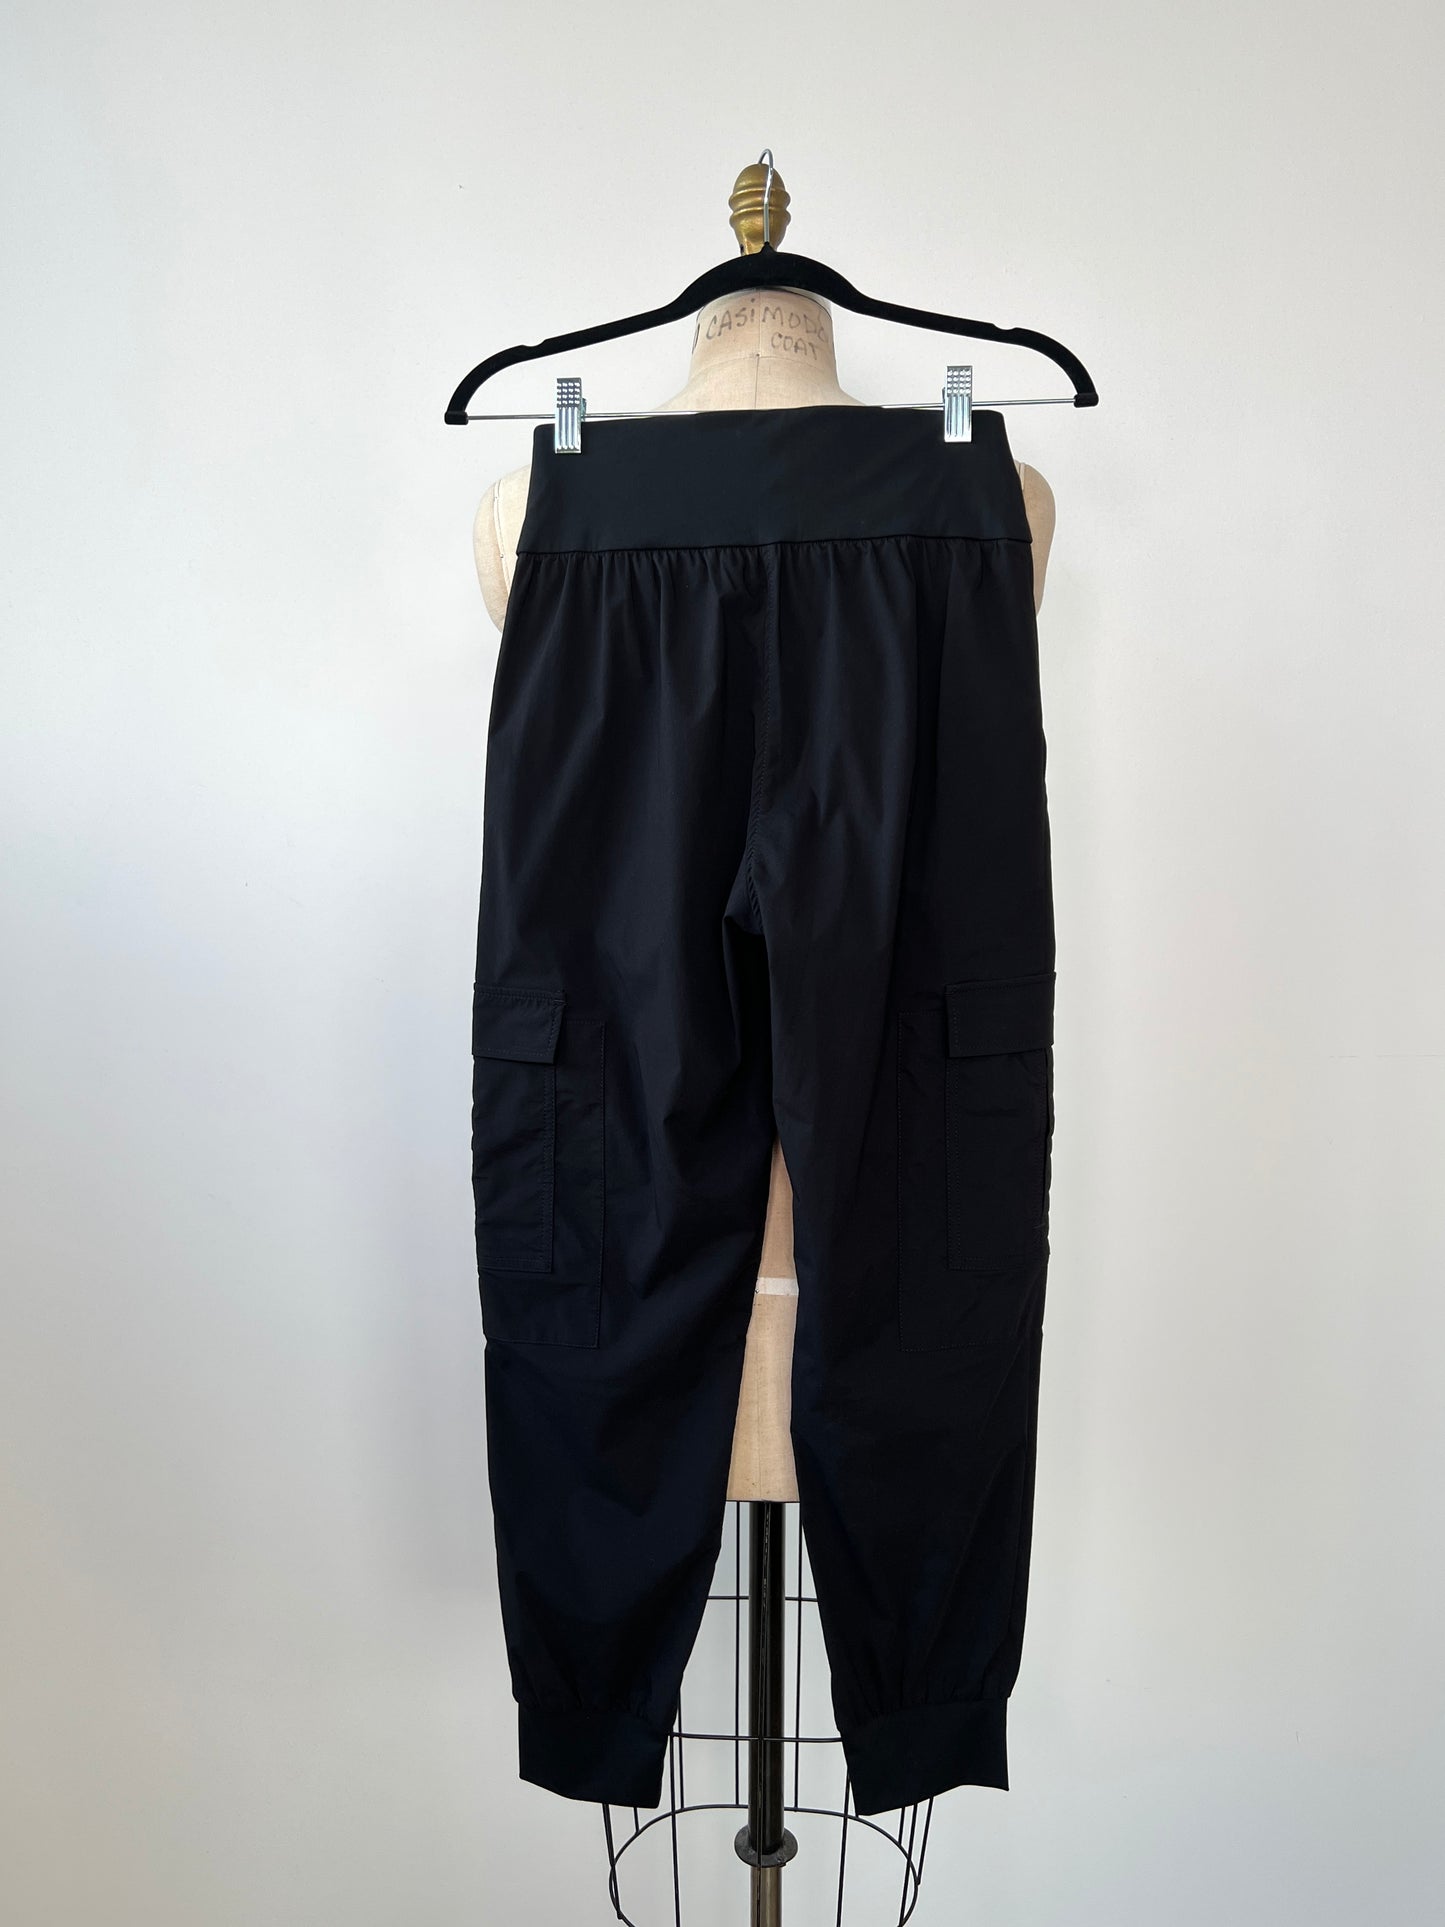 Pantalon jogger cargo noir en microfibre (XS et S)